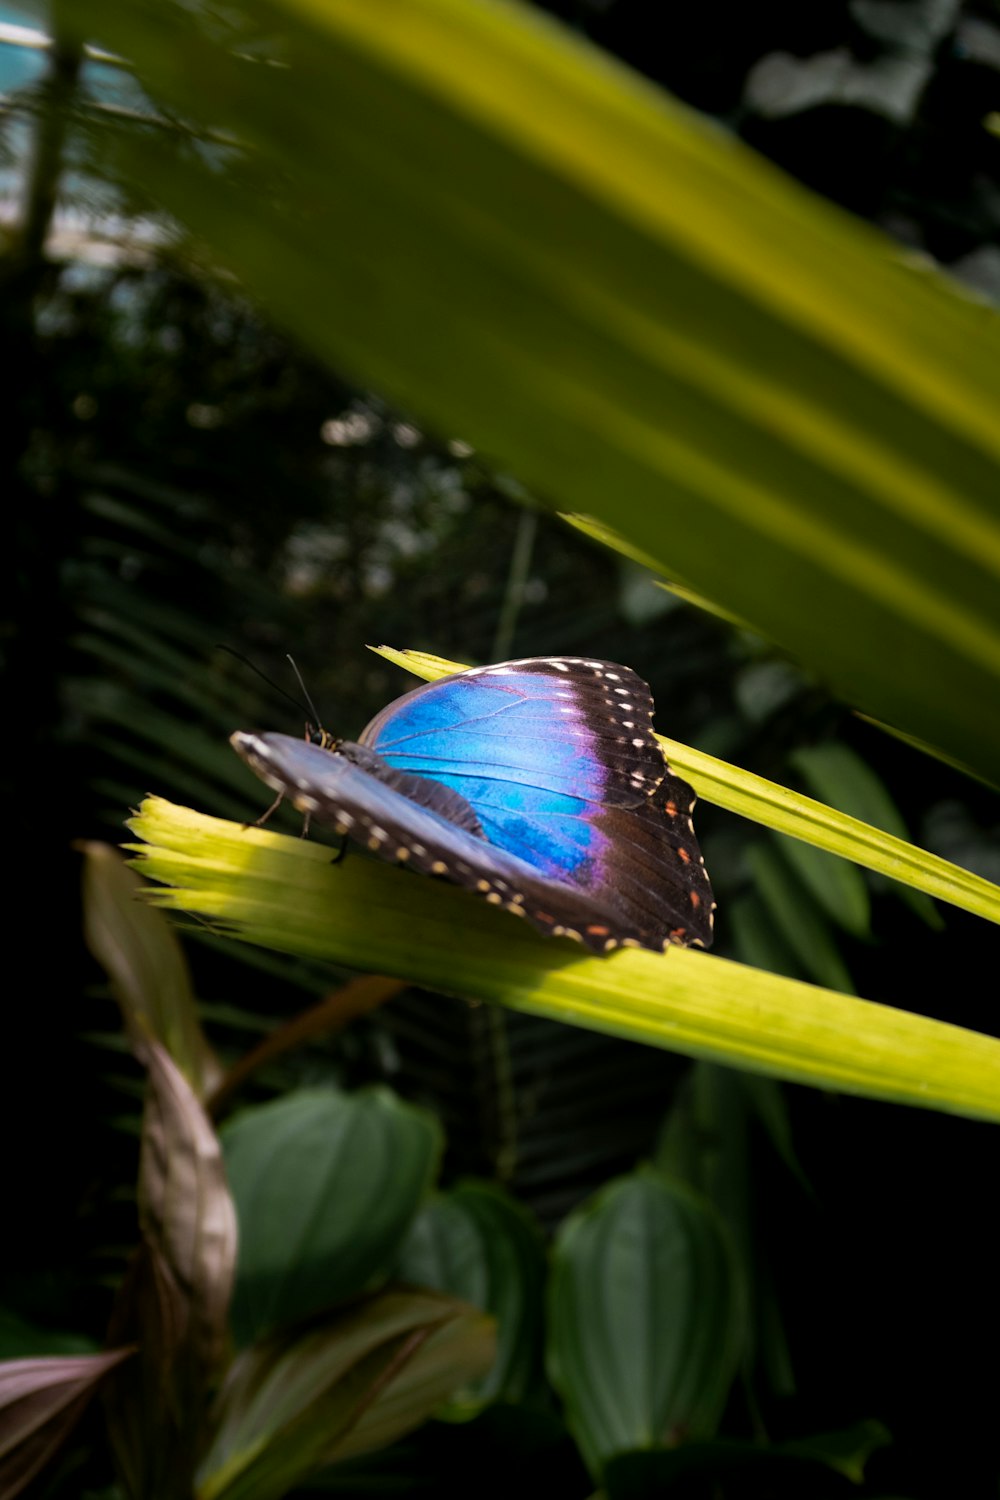 녹색 잎 위에 앉아 있는 파란 나비